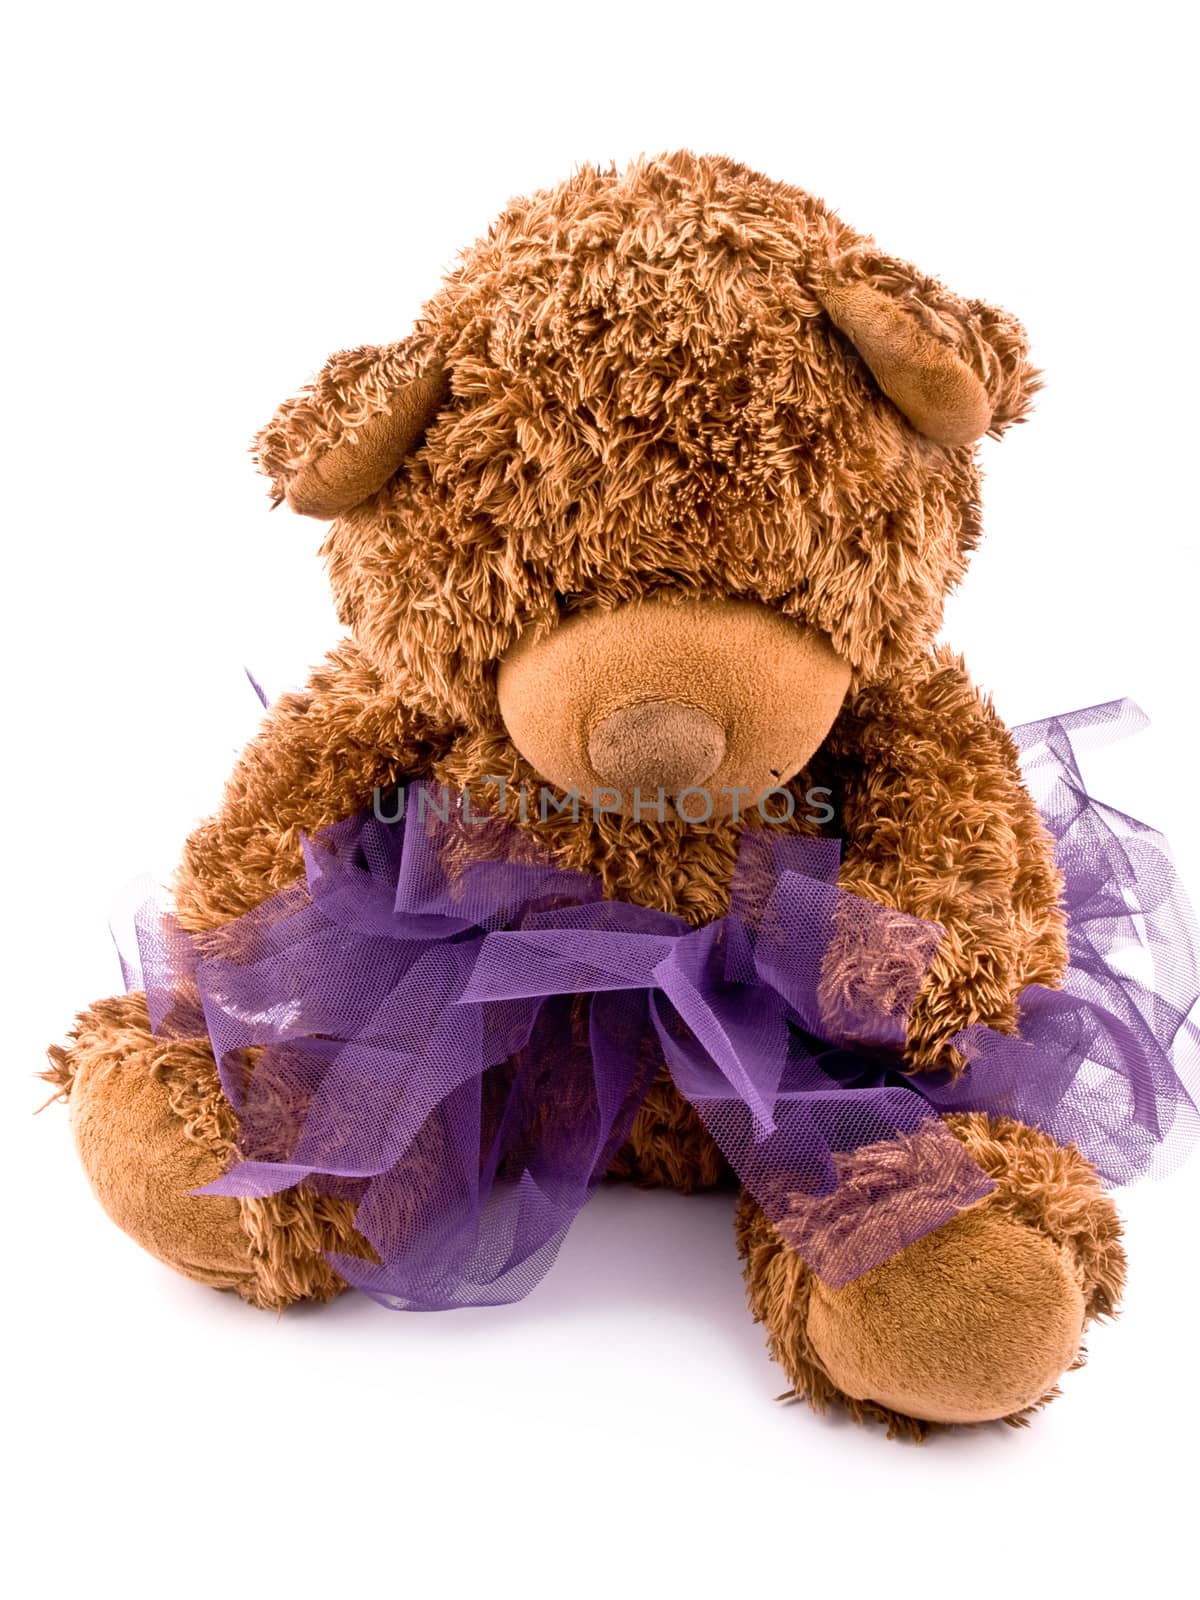 Teddy bear in purple tutu skirt by mrsNstudio